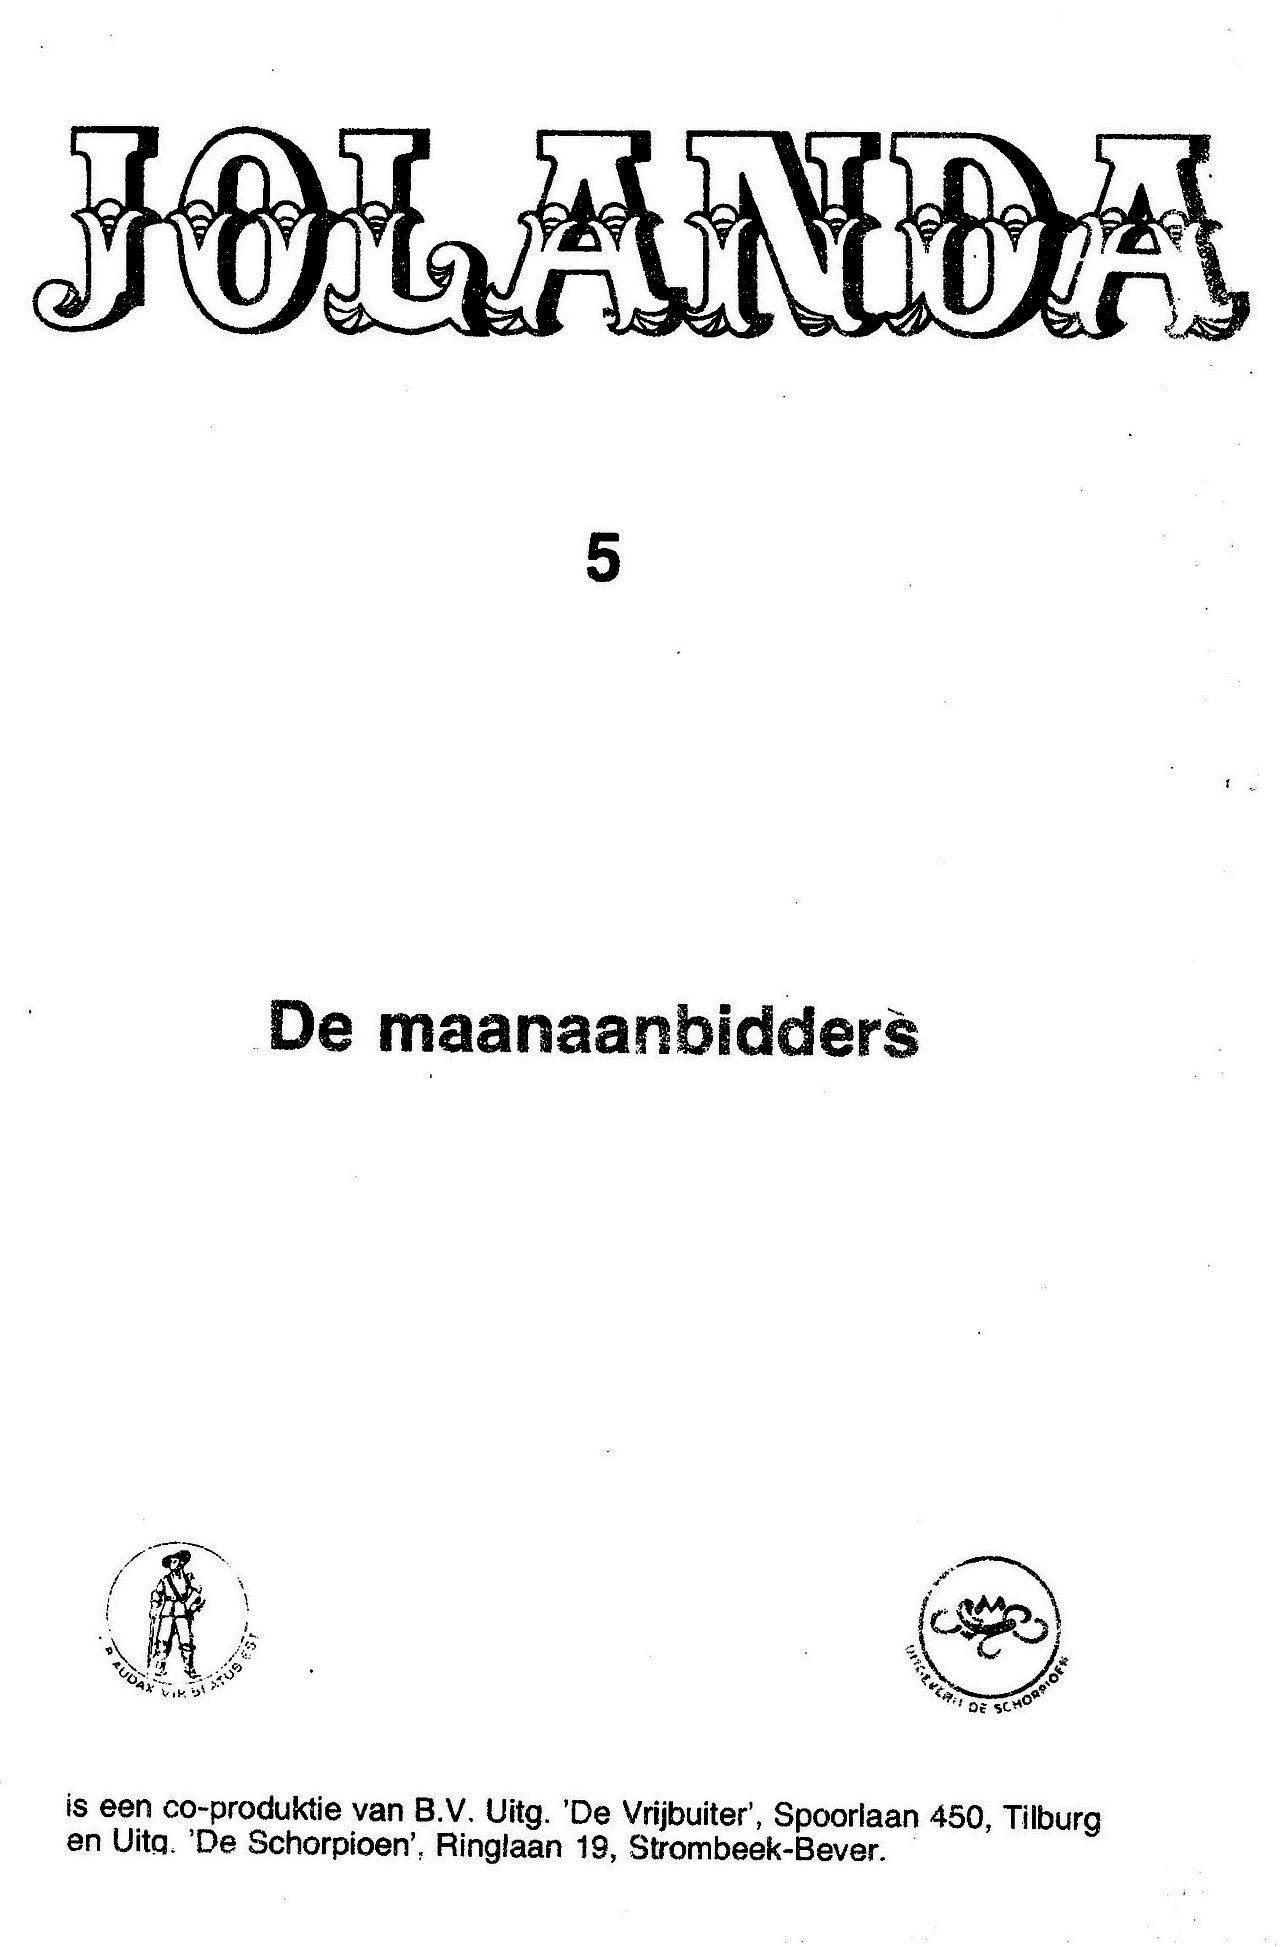 Jolanda 5 - De maan aanbidders (Dutch) 1